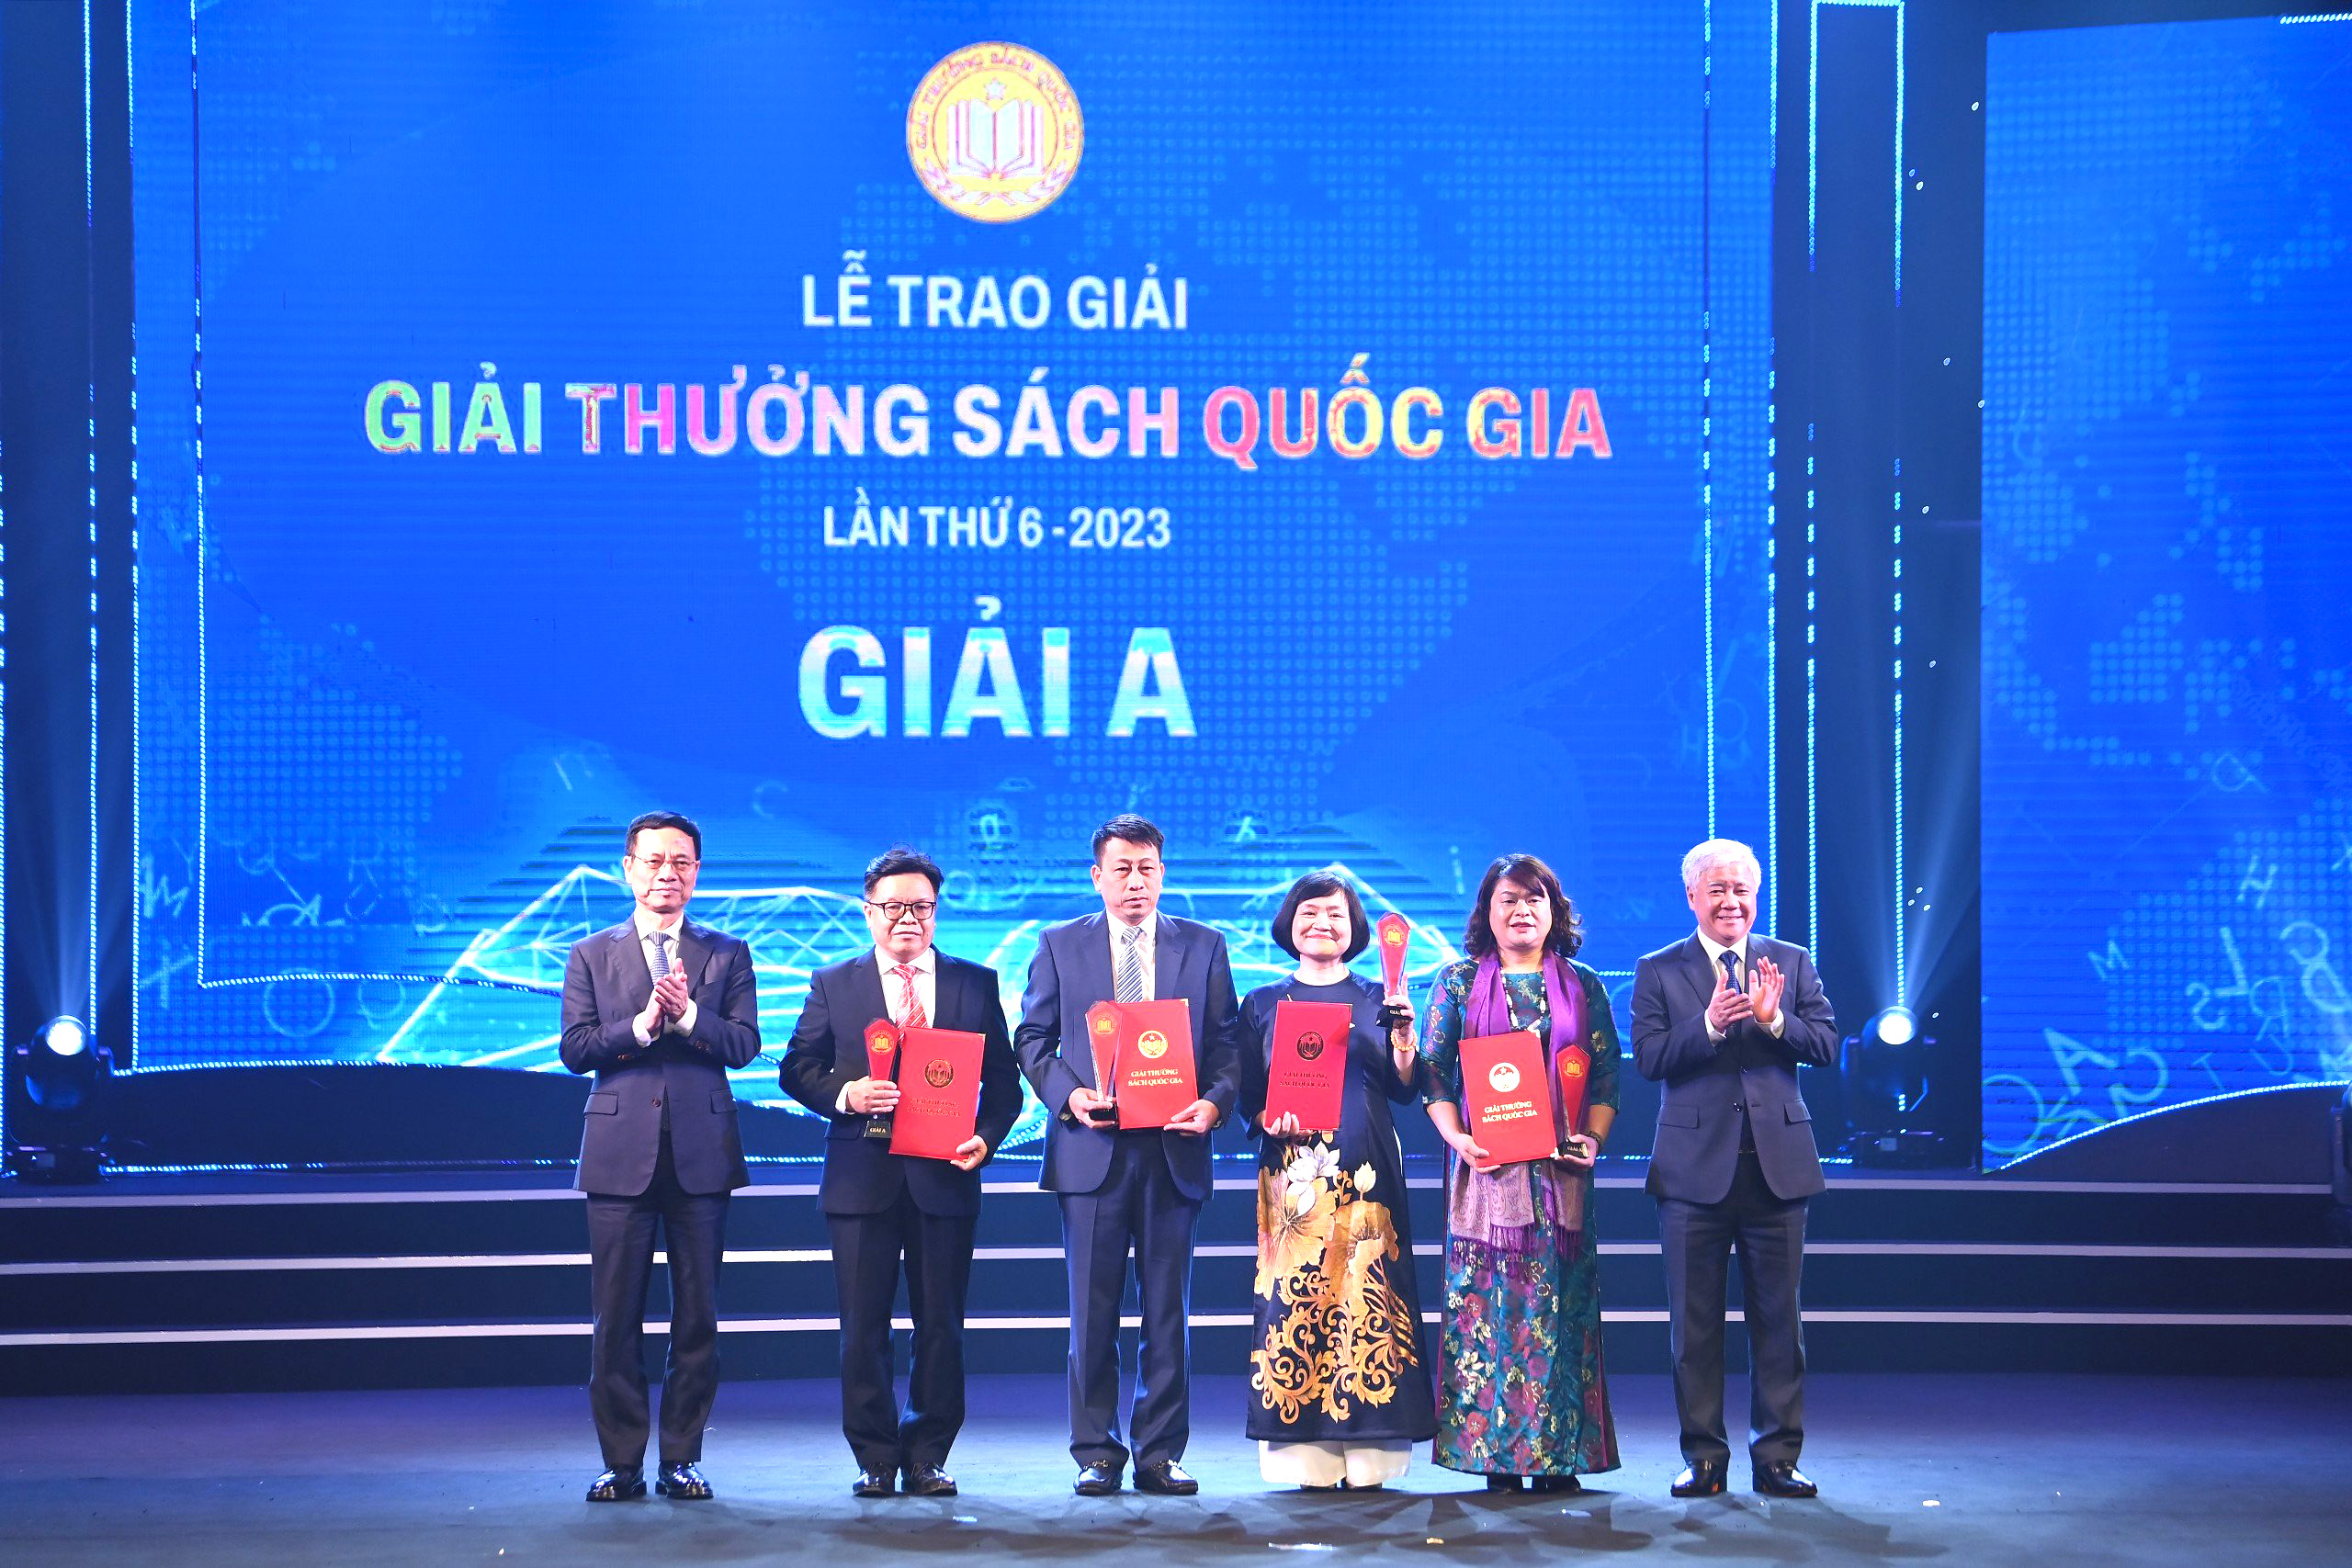 Bộ sách “Chào tiếng việt” của Nhà xuất bản giáo dục Việt Nam đoạt giải thưởng sách quốc gia lần thứ sáu